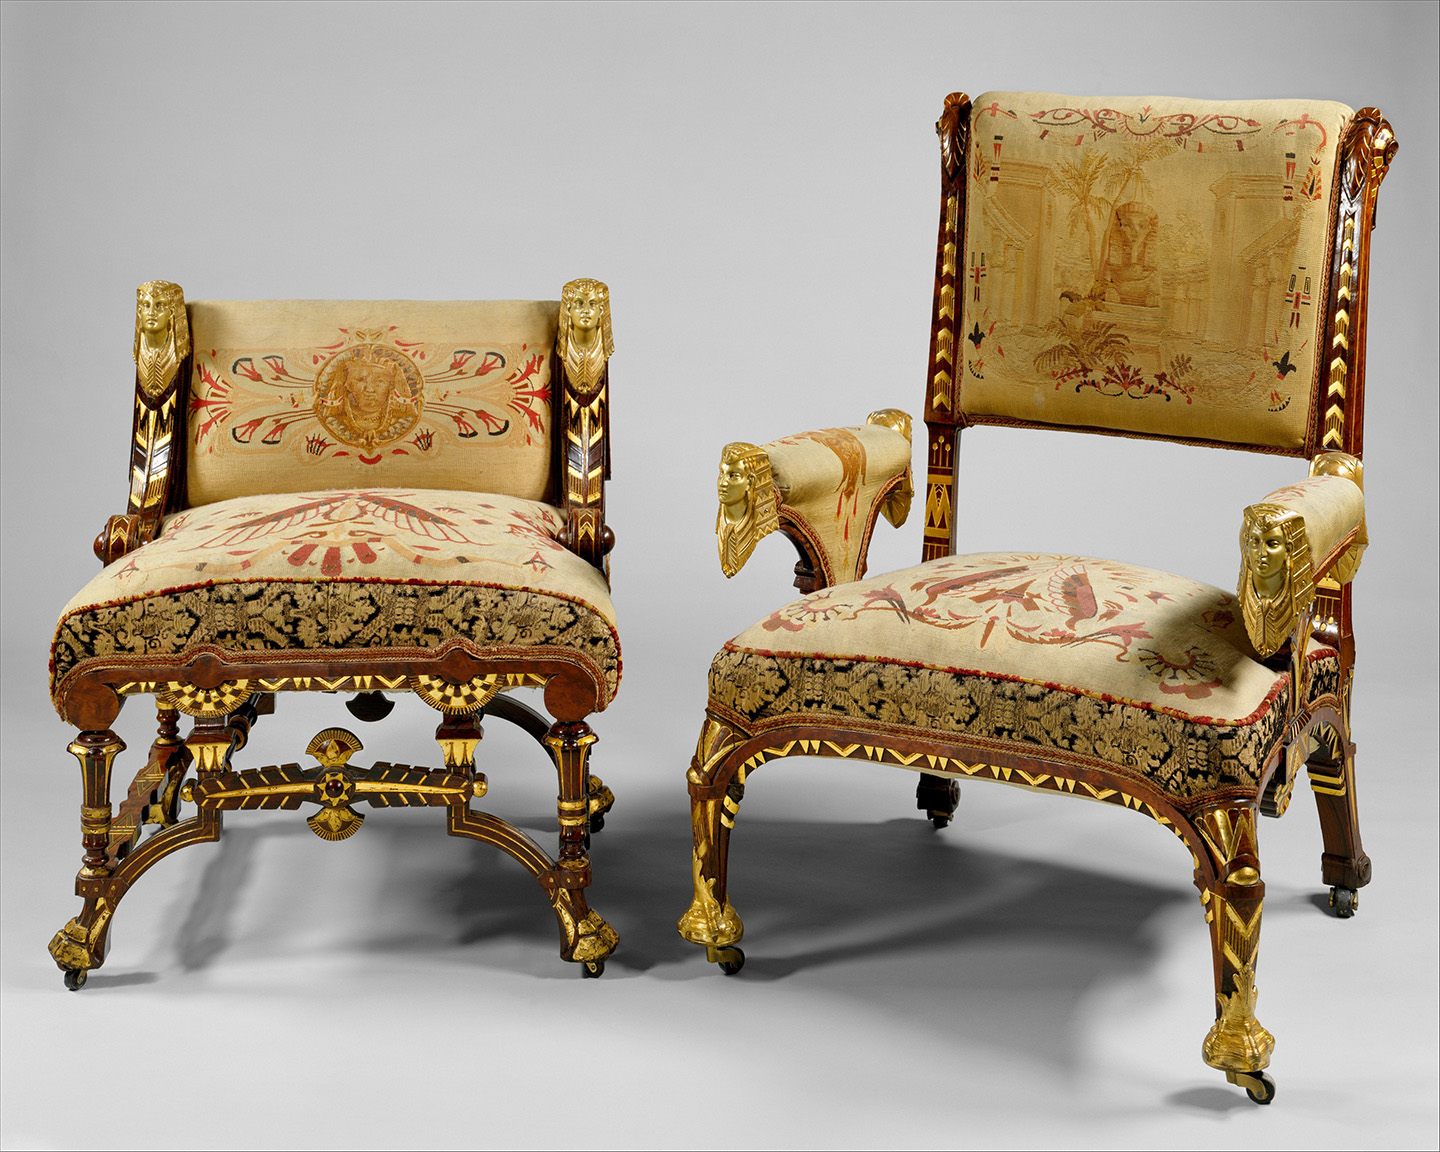 Ghế bành theo phong cách Phục Hưng Ai Cập có đầu nhân sư, được cho là của Hãng sản xuất Pottier & Stymus, khoảng năm 1870–1875. Bảo tàng Nghệ thuật Metropolitan, thành phố New York. (Ảnh: Tư liệu công cộng)